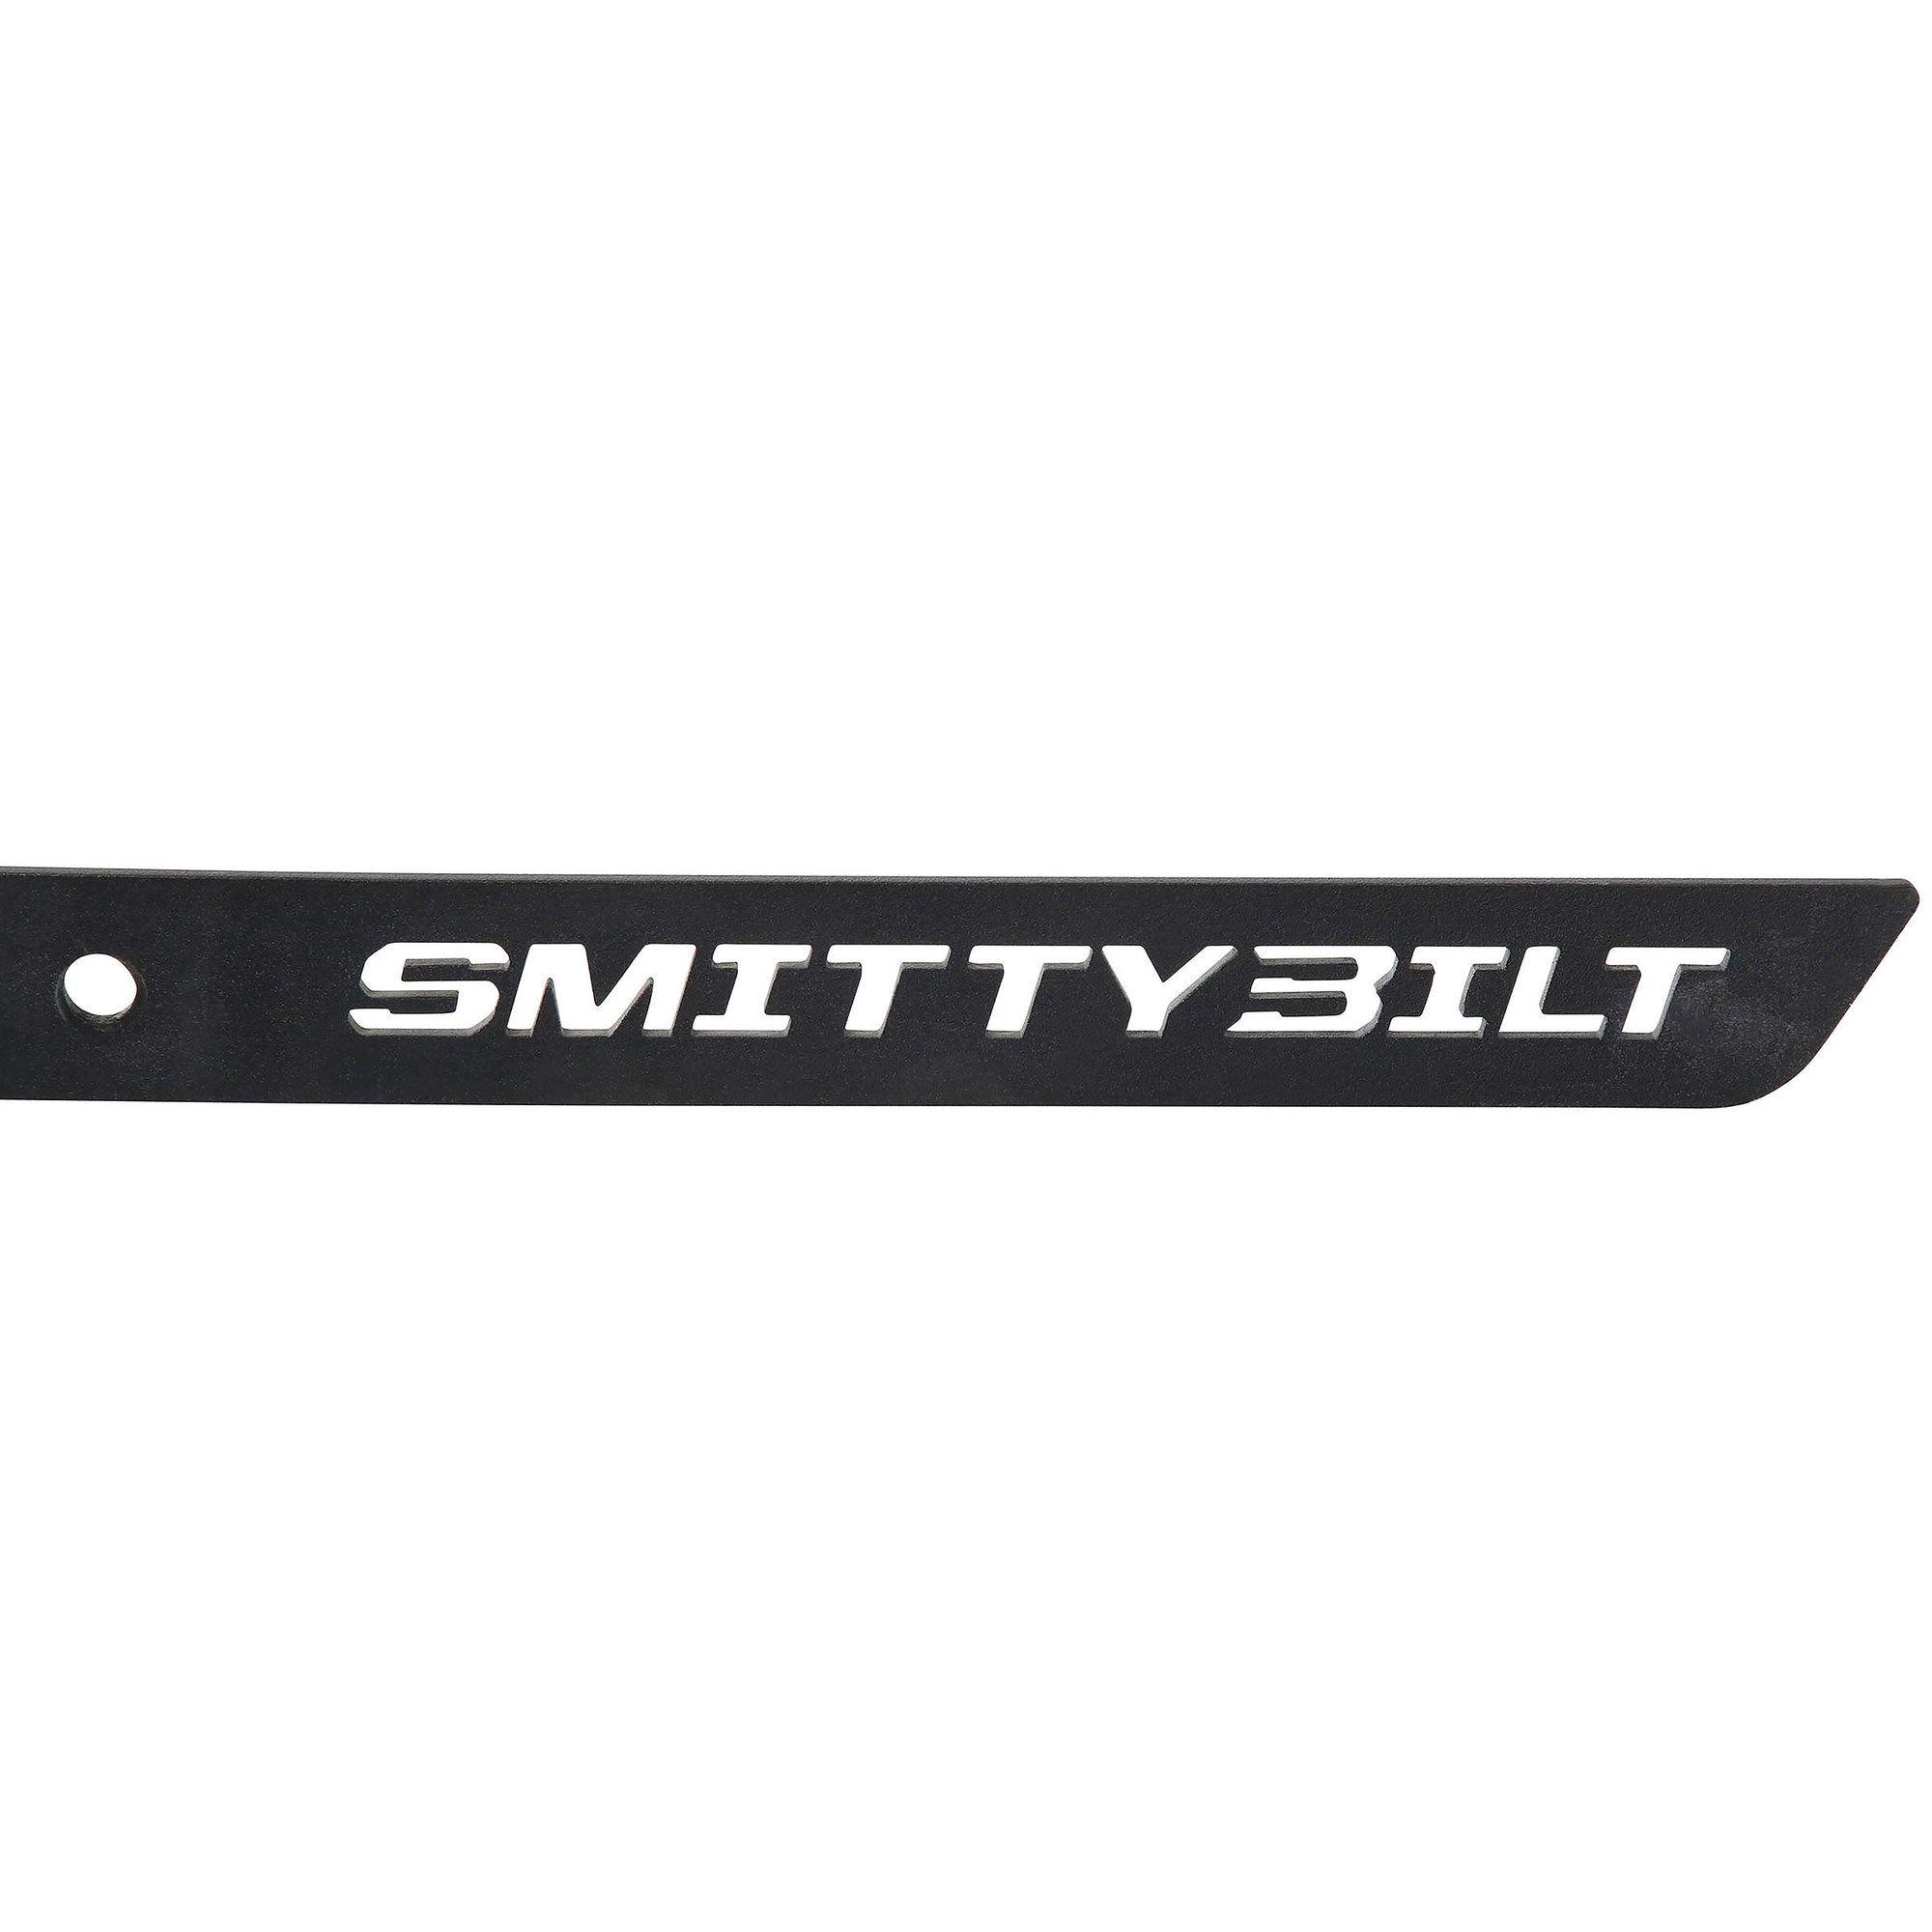 Jeep Wrangler Unlimited Logo - Smittybilt 77634 SRC Side Armor Steps For 18 19 Jeep Wrangler